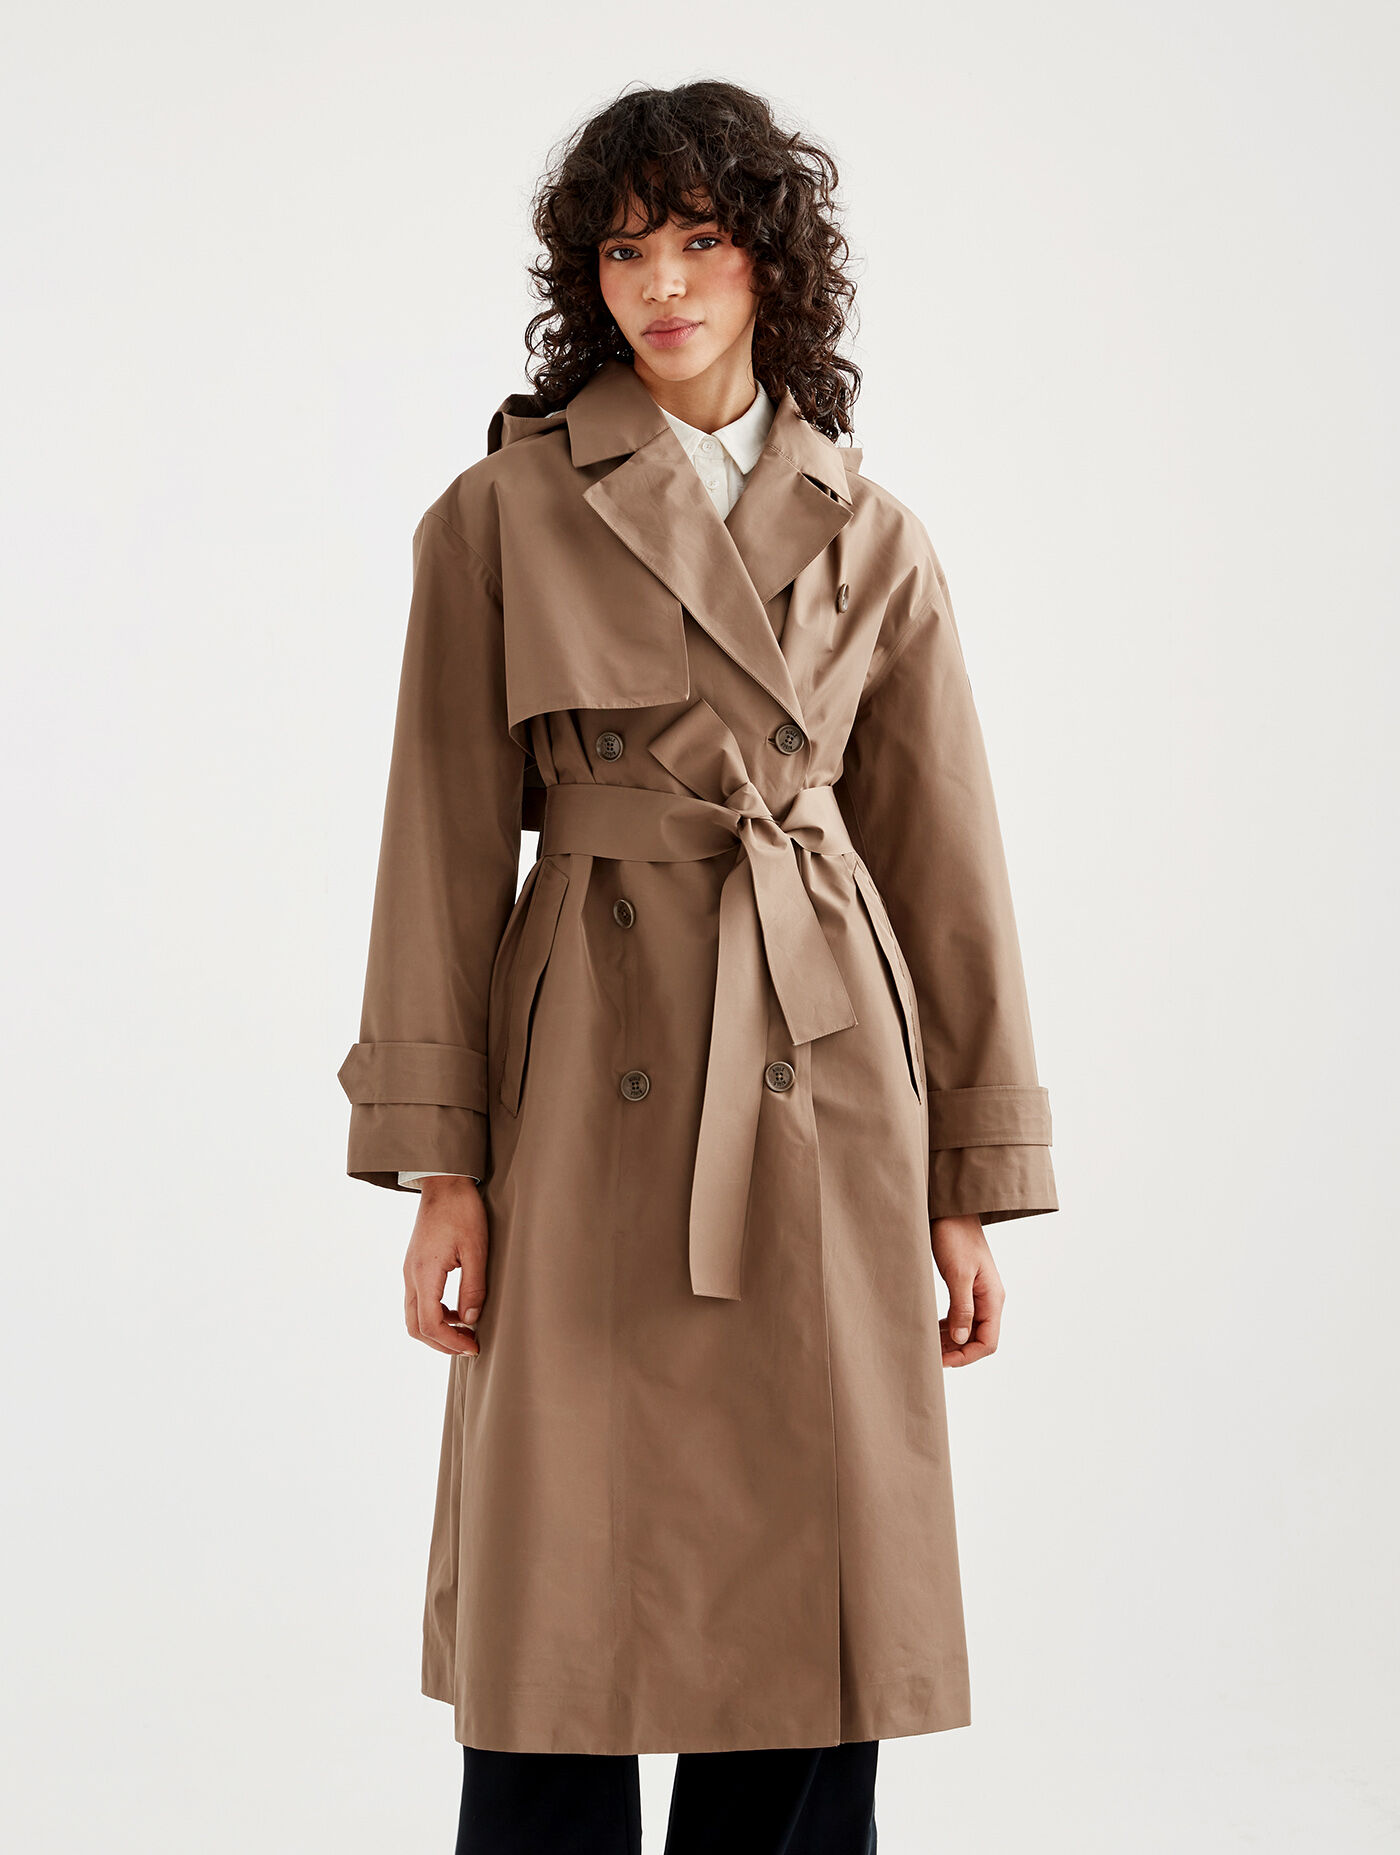 Women's trench coats | Aigle